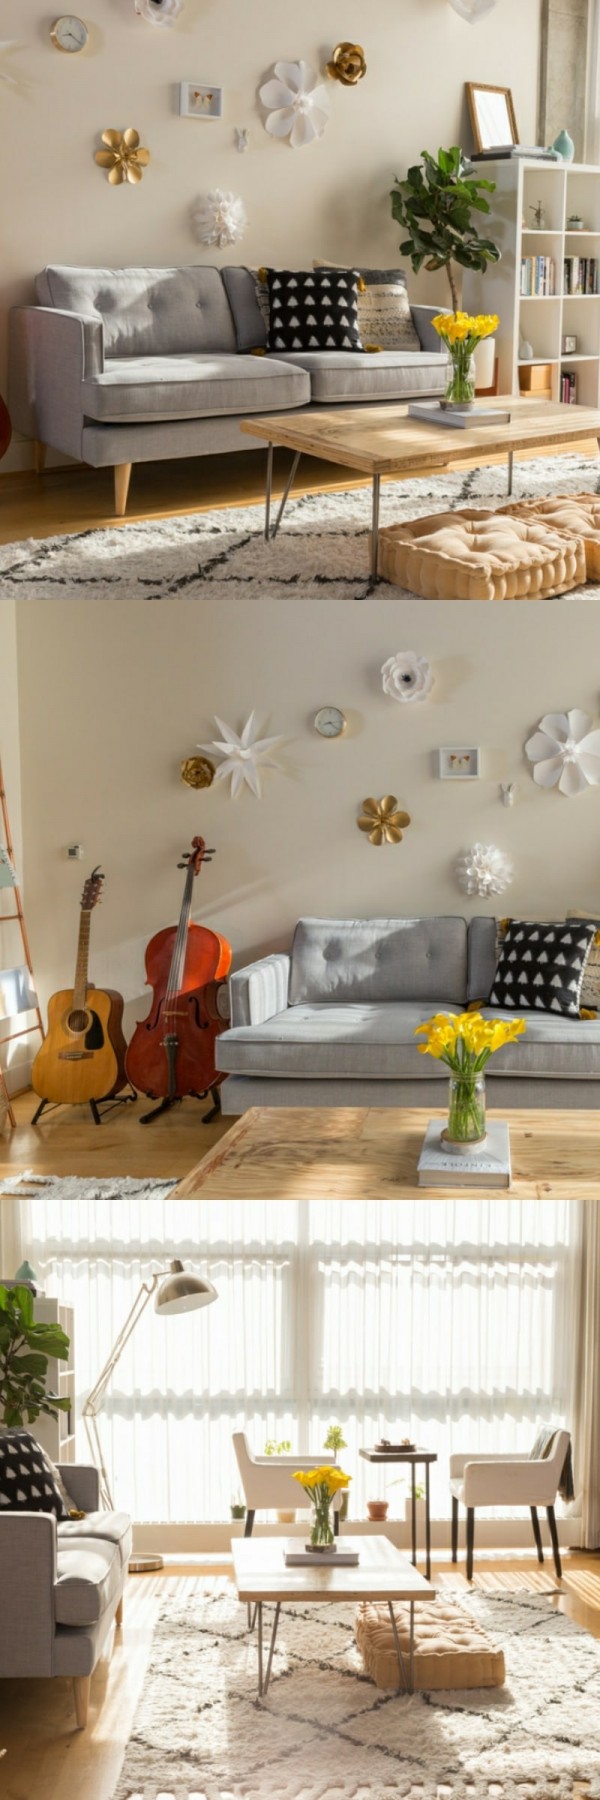 living room decorating ideas apartment